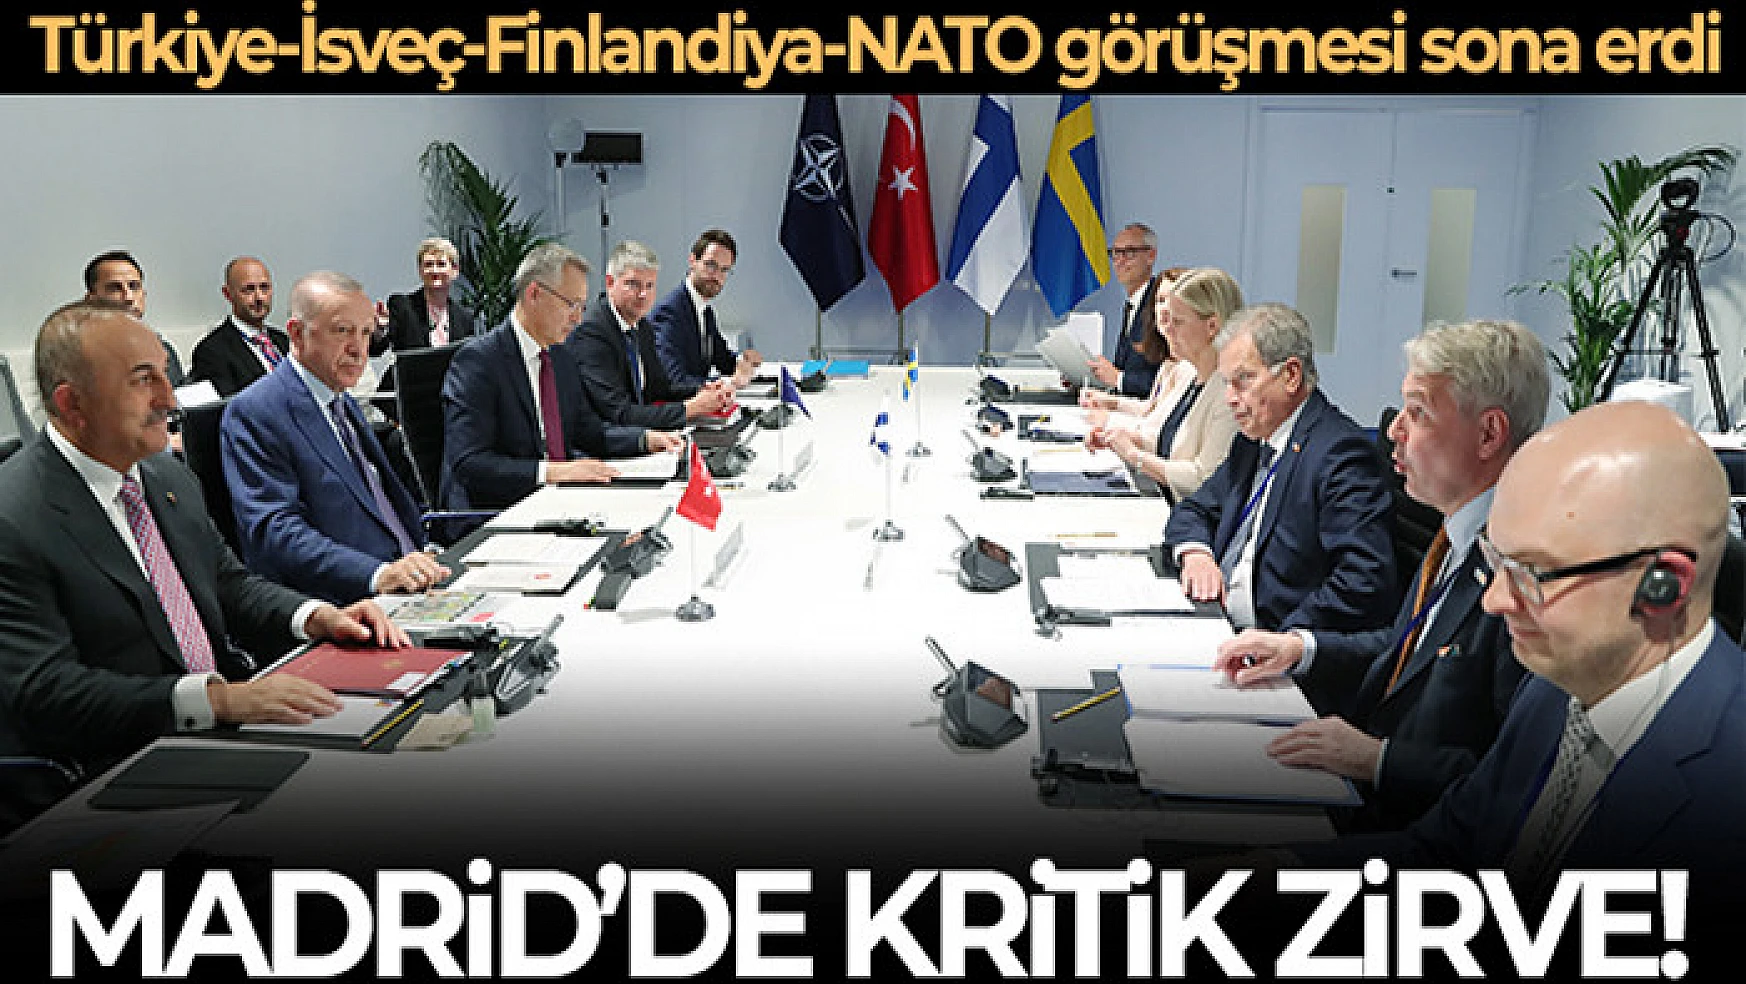 Madrid'deki kritik Türkiye-İsveç-Finlandiya-NATO görüşmesi sona erdi